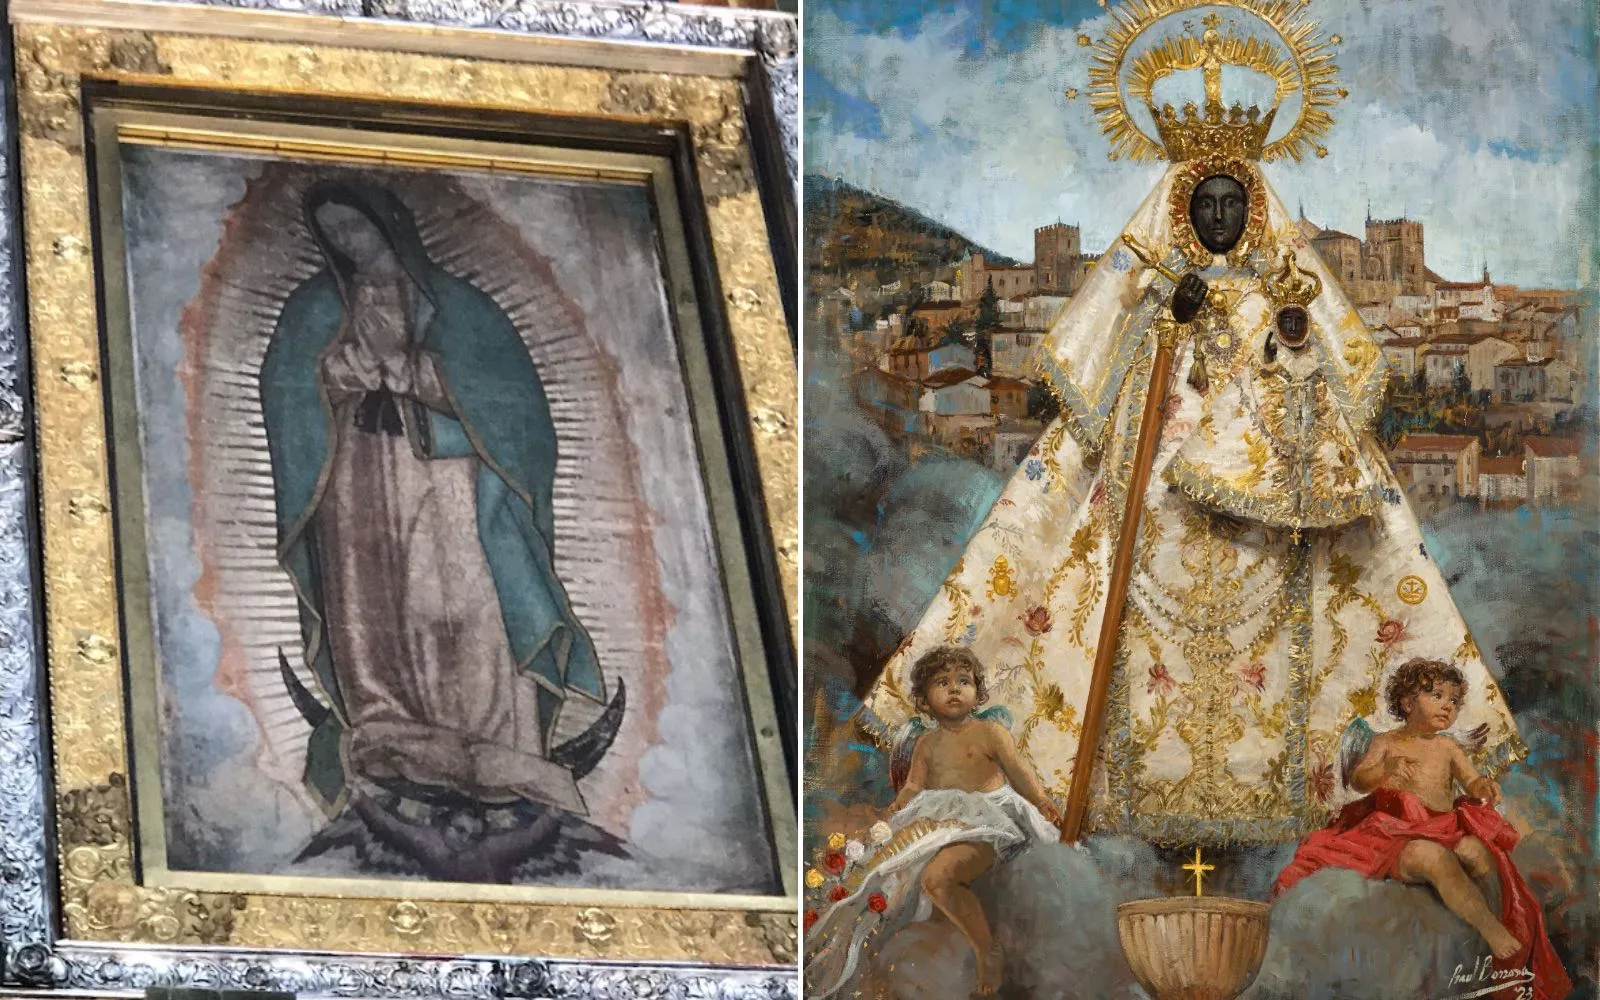 A la izquierda la advocación de la Nuestra Señora de Guadalupe en México. A la derecha, la Virgen de Guadalupe de Extremadura (España).?w=200&h=150